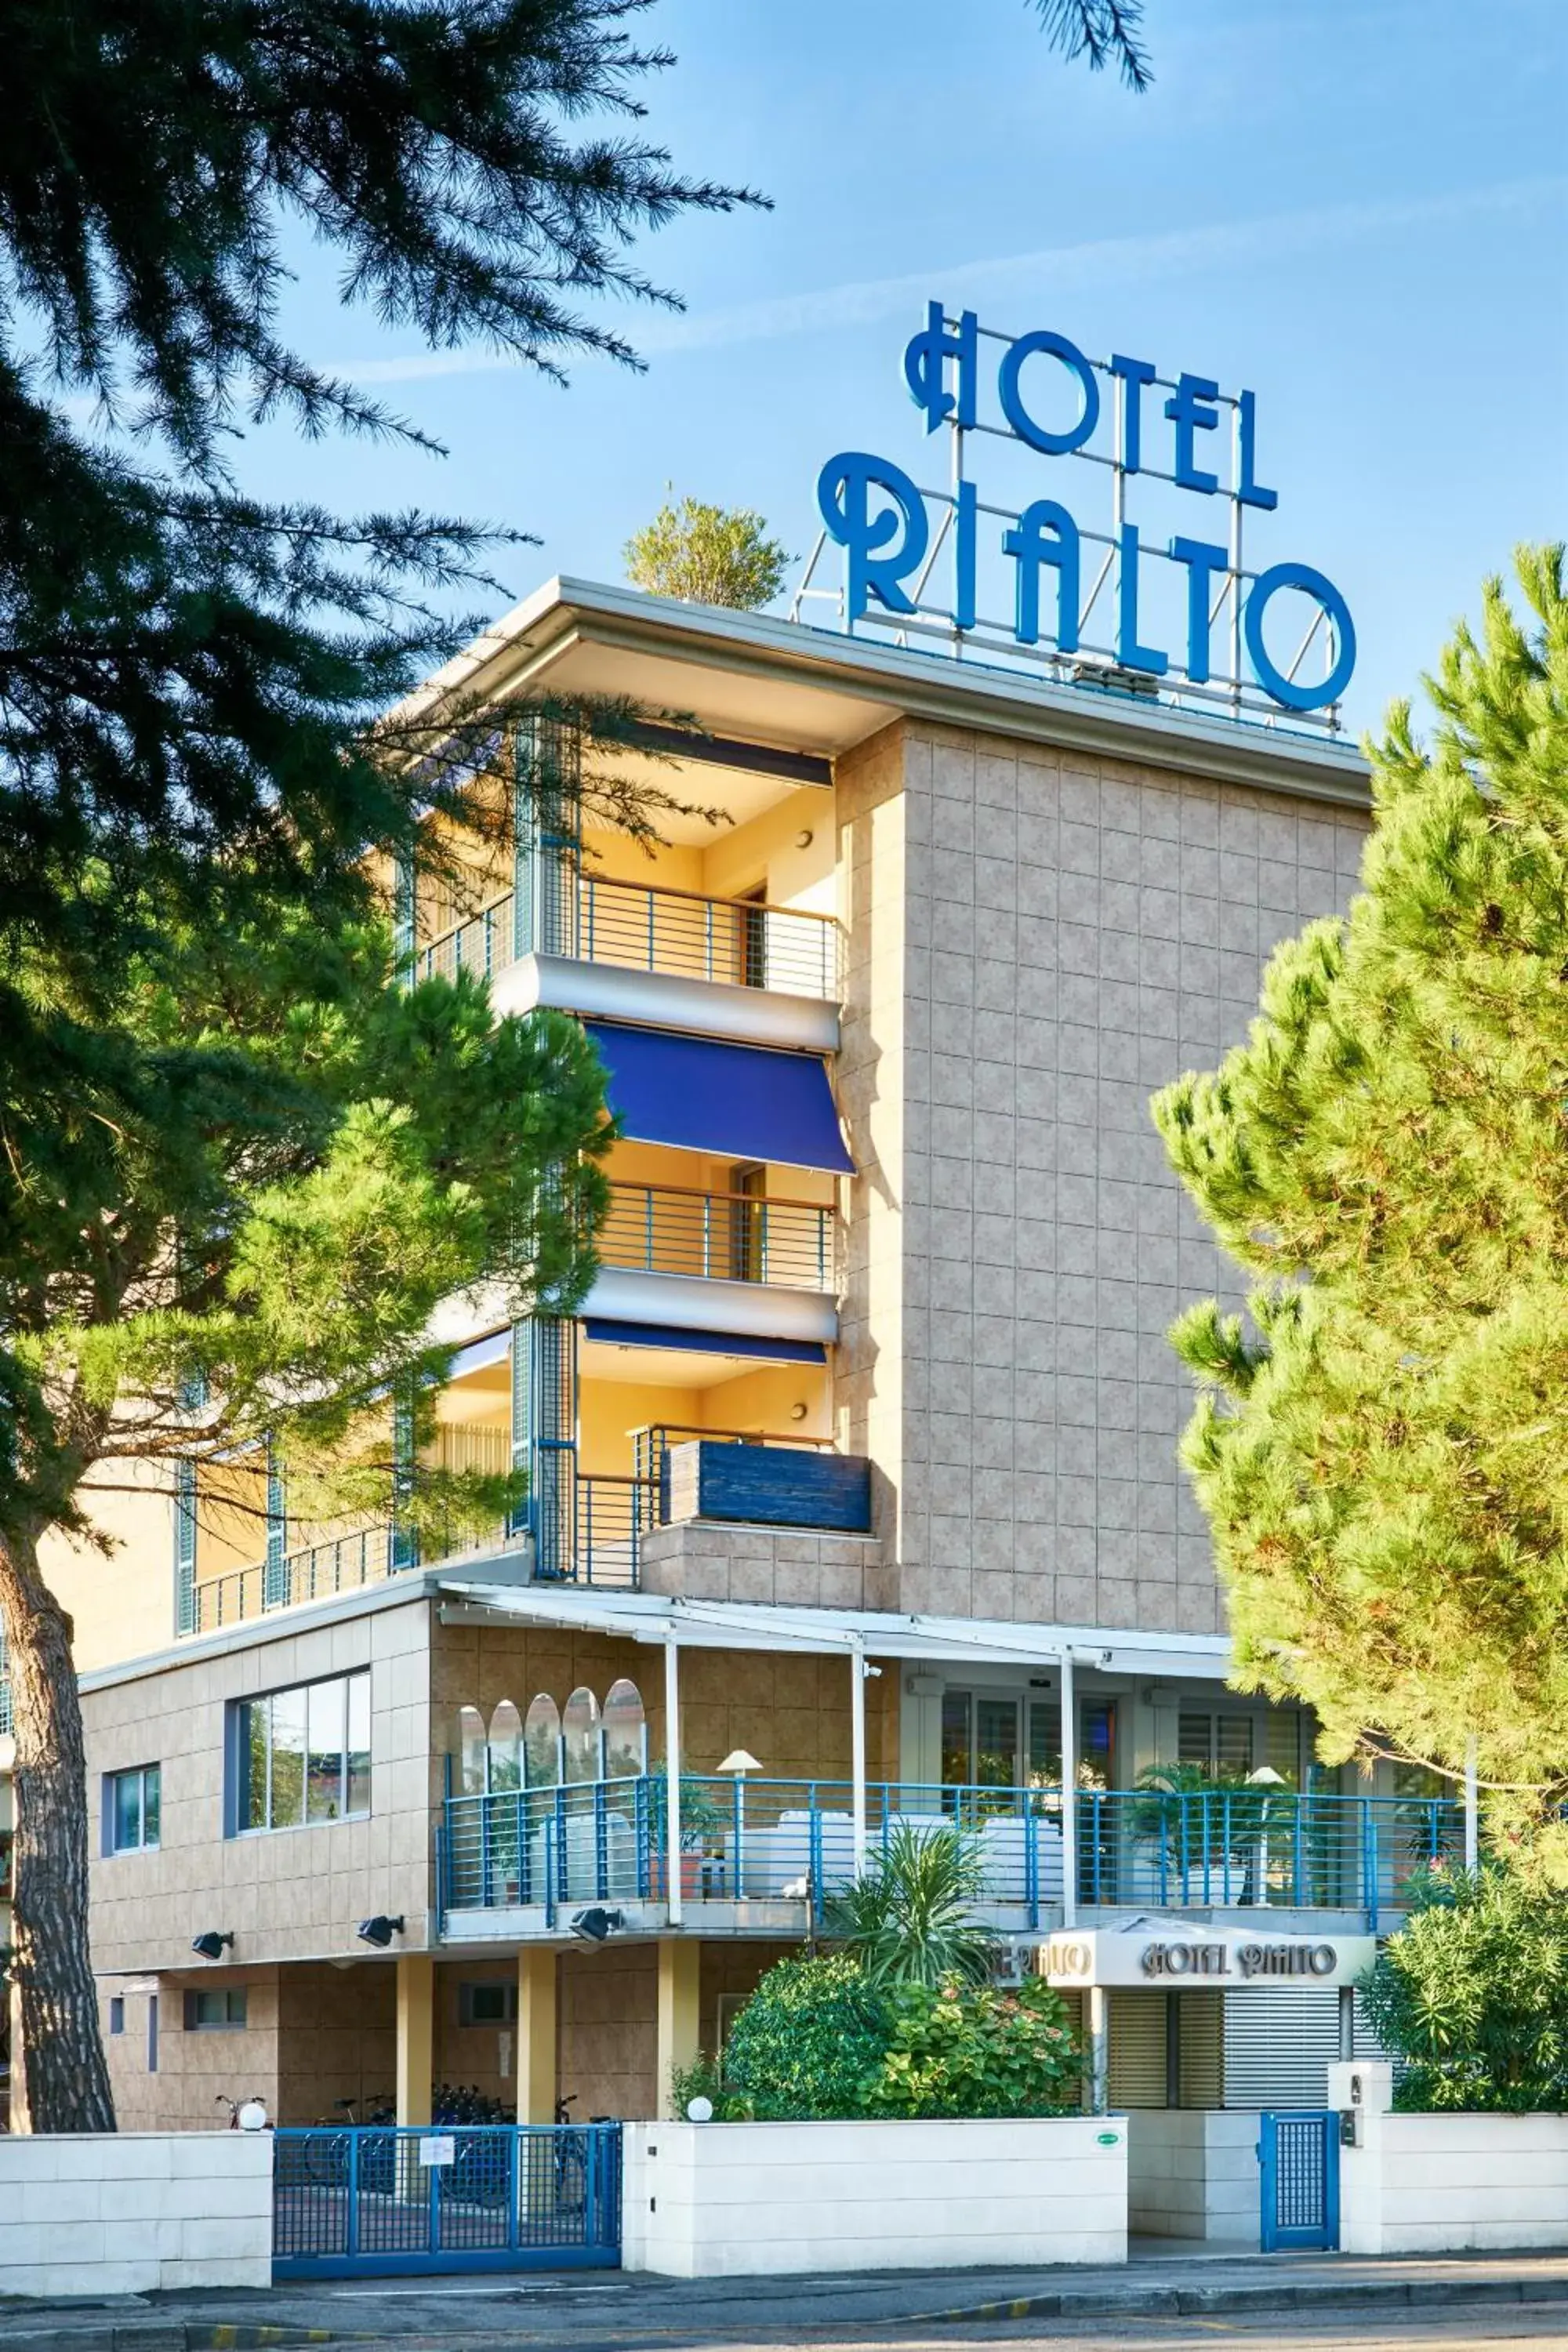 Property Building in Hotel Rialto